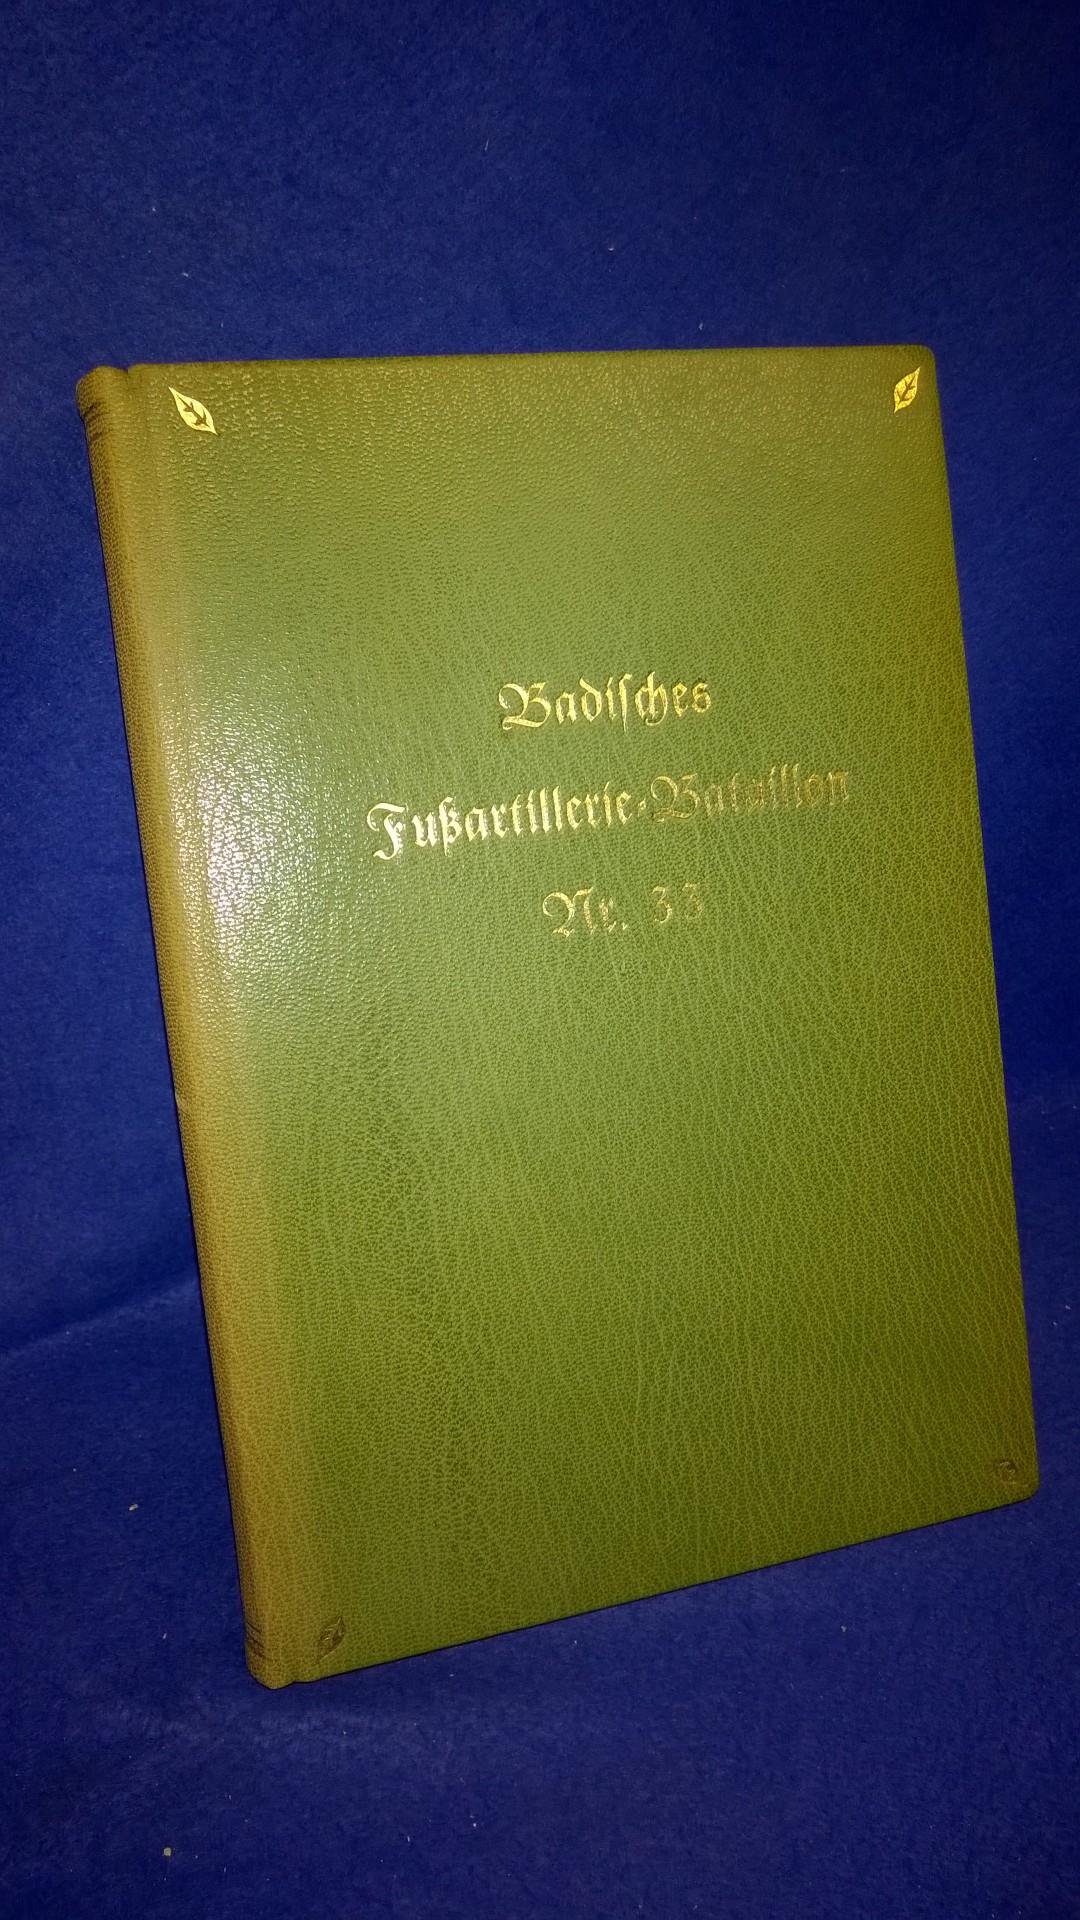 Badisches Fußartillerie-Bataillon Nr. 33 Nach amtlichen Unterlagen und Berichten der Mitkämpfer unter Mitwirkung von Hans Hauske bearbeitet.